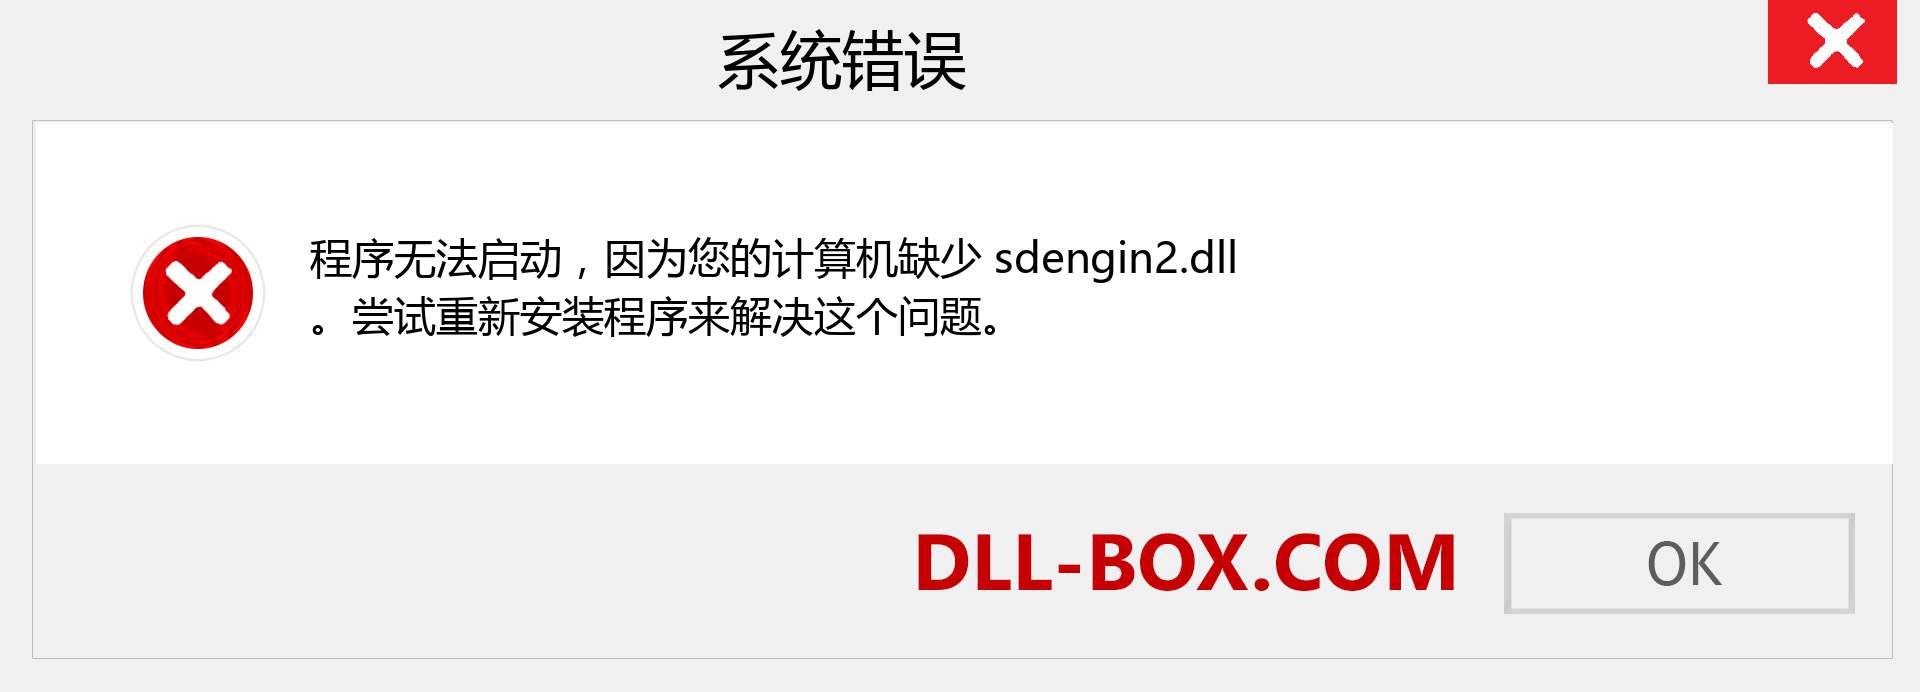 sdengin2.dll 文件丢失？。 适用于 Windows 7、8、10 的下载 - 修复 Windows、照片、图像上的 sdengin2 dll 丢失错误